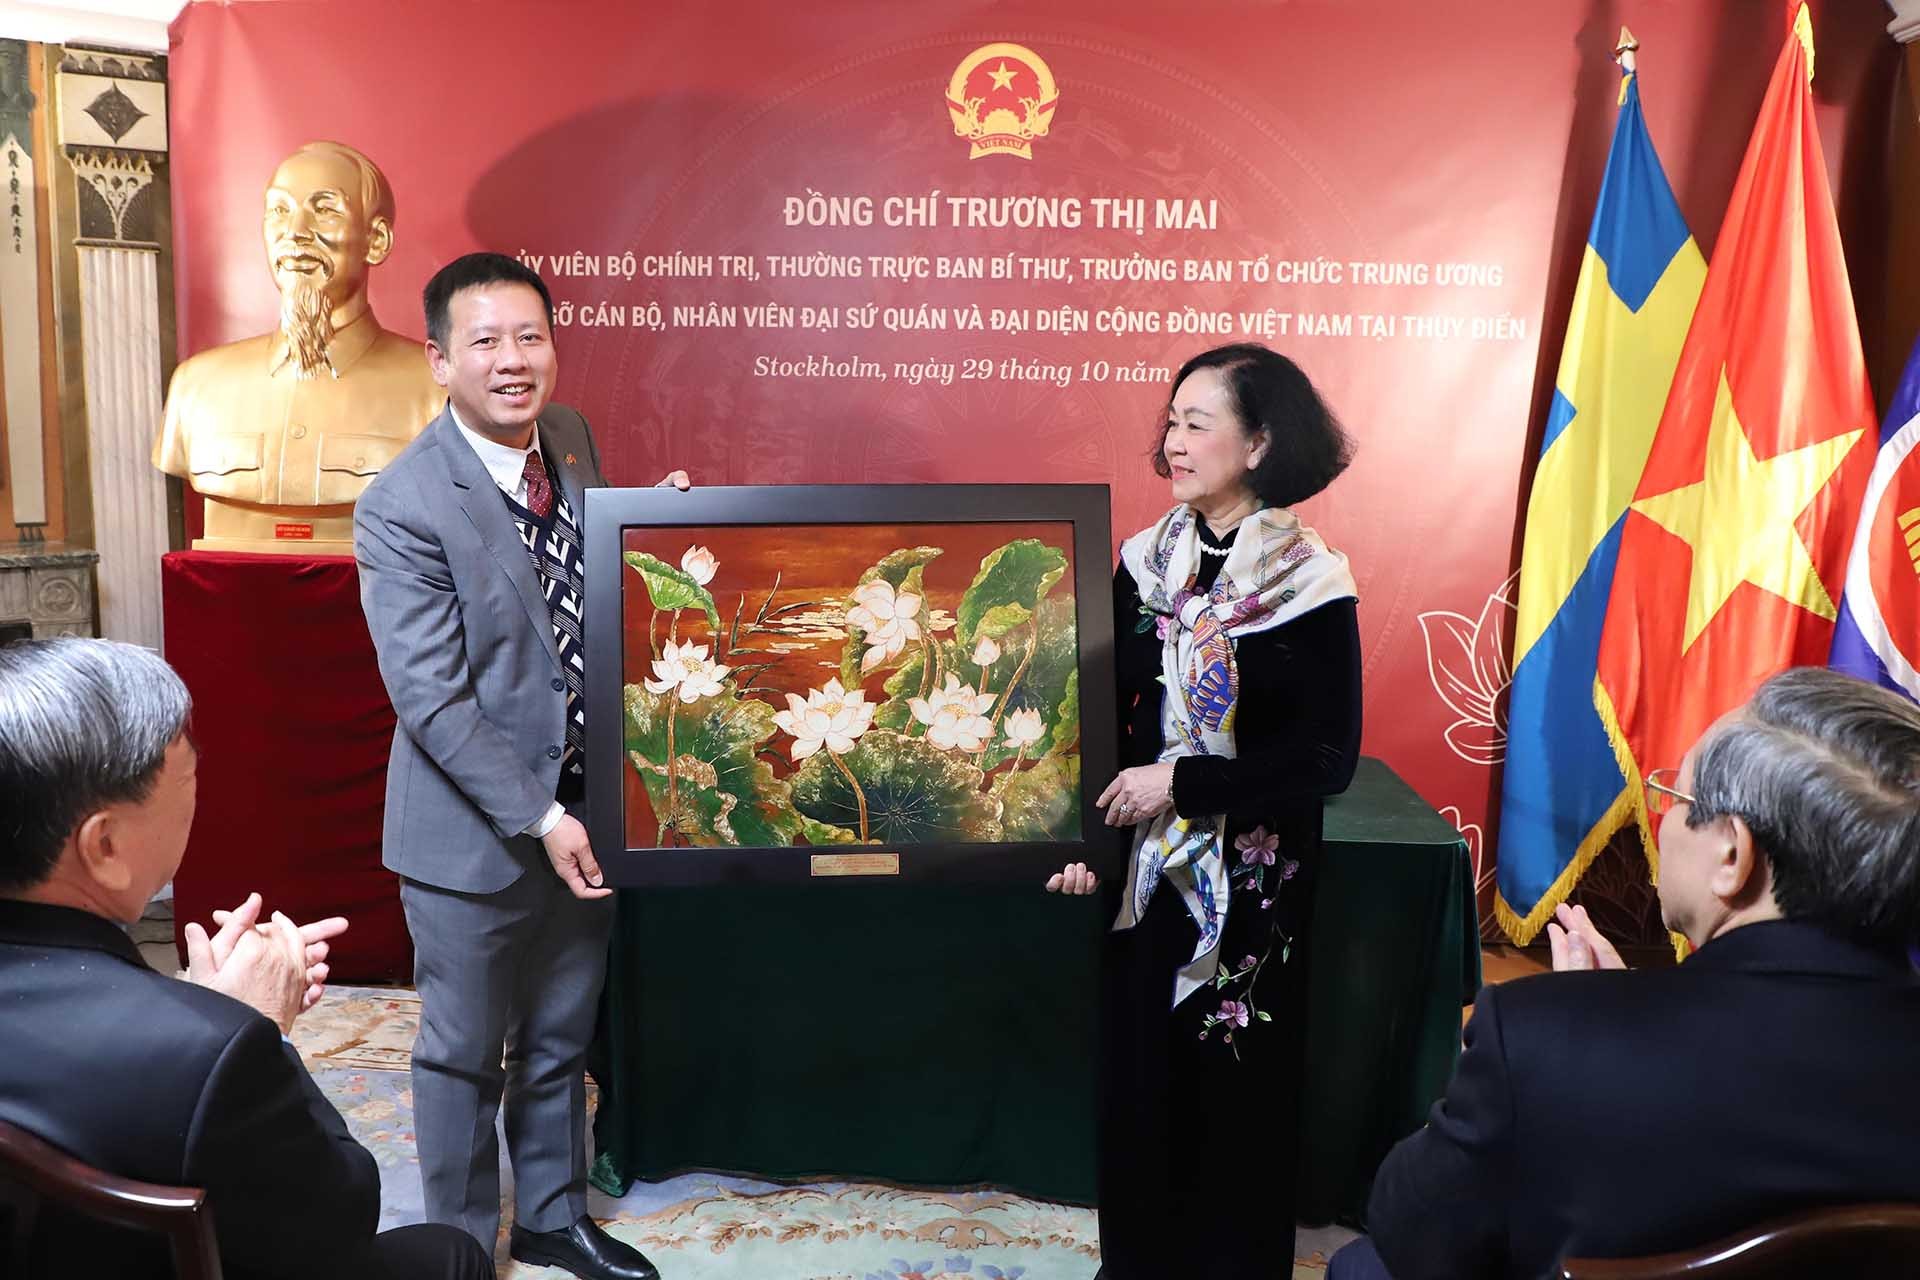 Đồng chí Trương Thị Mai tặng tranh lưu niệm cho Đại sứ quán Việt Nam tại Thụy Điển. (Nguồn: TTXVN)